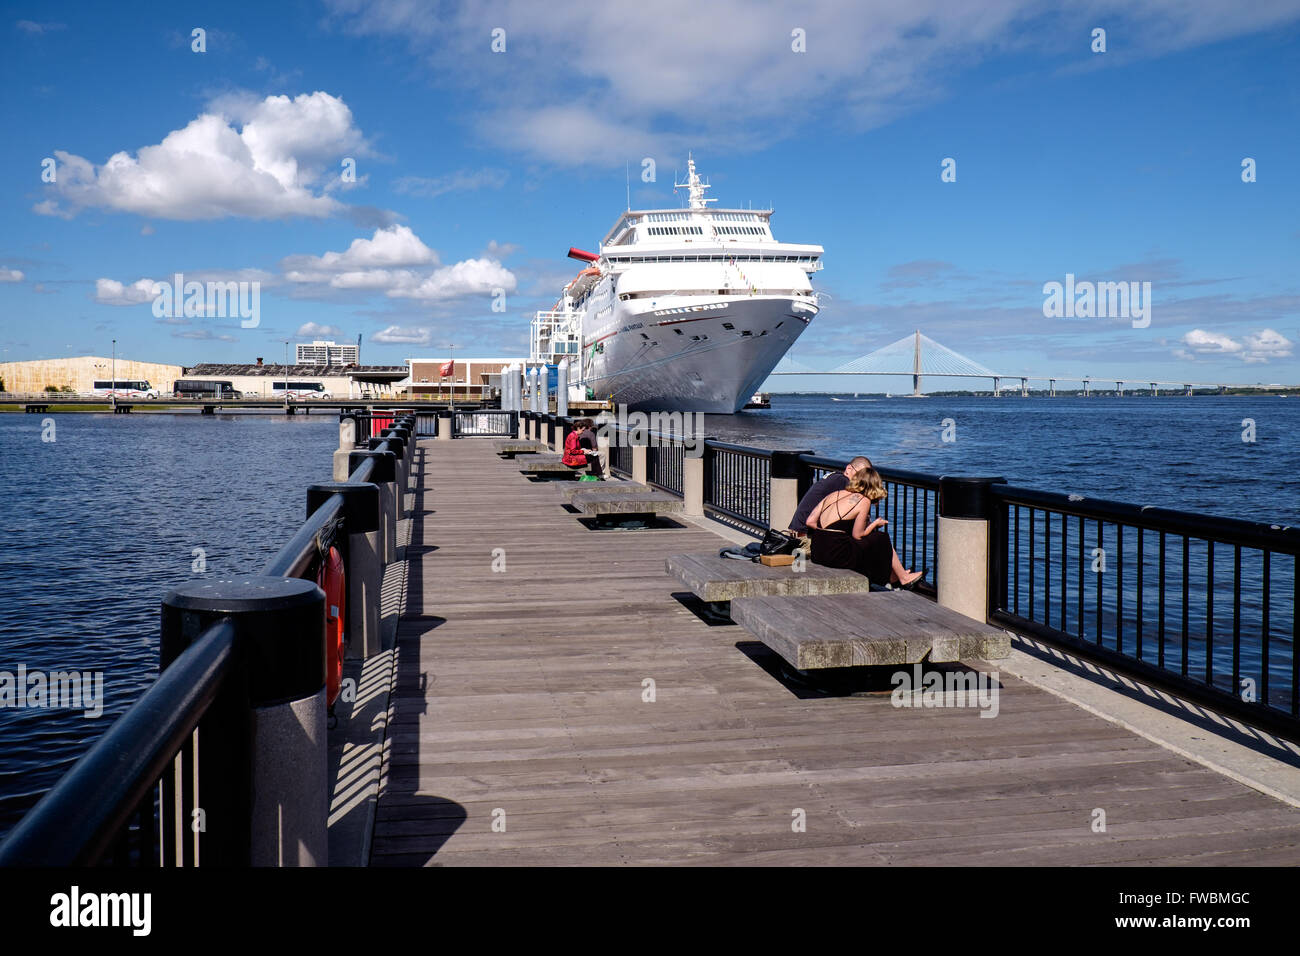 Carnival Fantasy cruise liner moored at Charleston harbor, South Carolina, USA Stock Photo